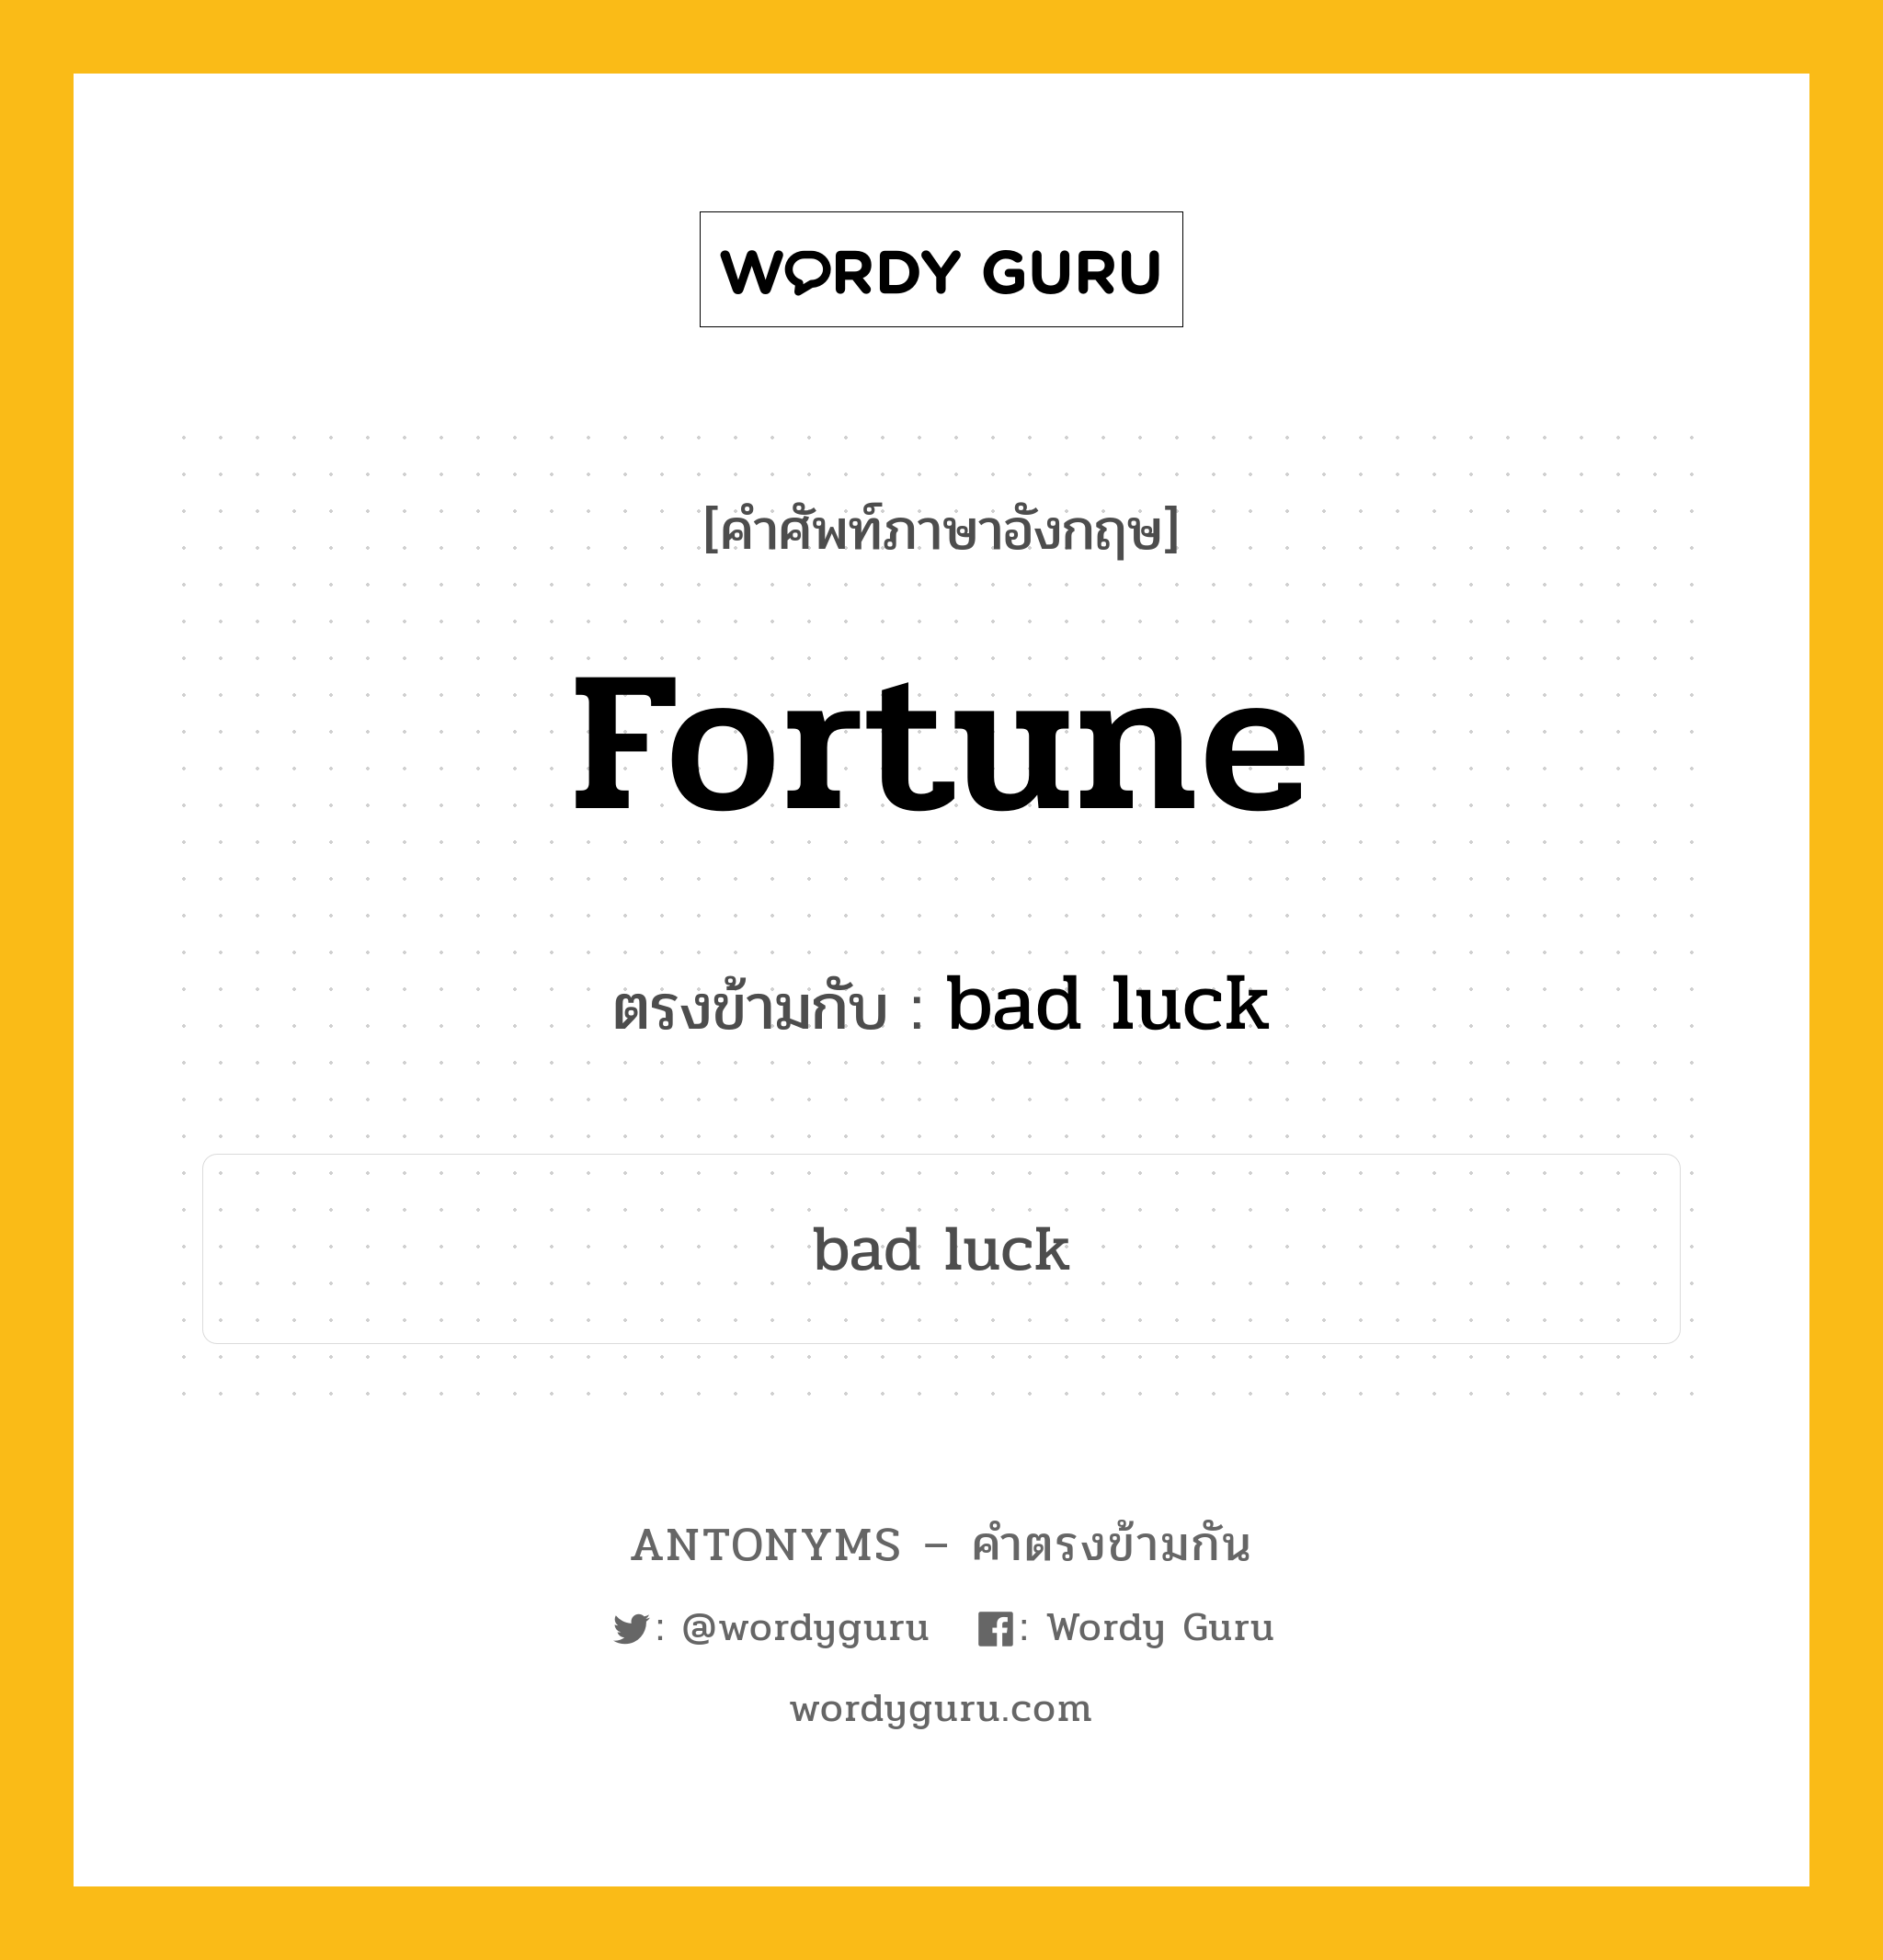 fortune เป็นคำตรงข้ามกับคำไหนบ้าง?, คำศัพท์ภาษาอังกฤษ fortune ตรงข้ามกับ bad luck หมวด bad luck